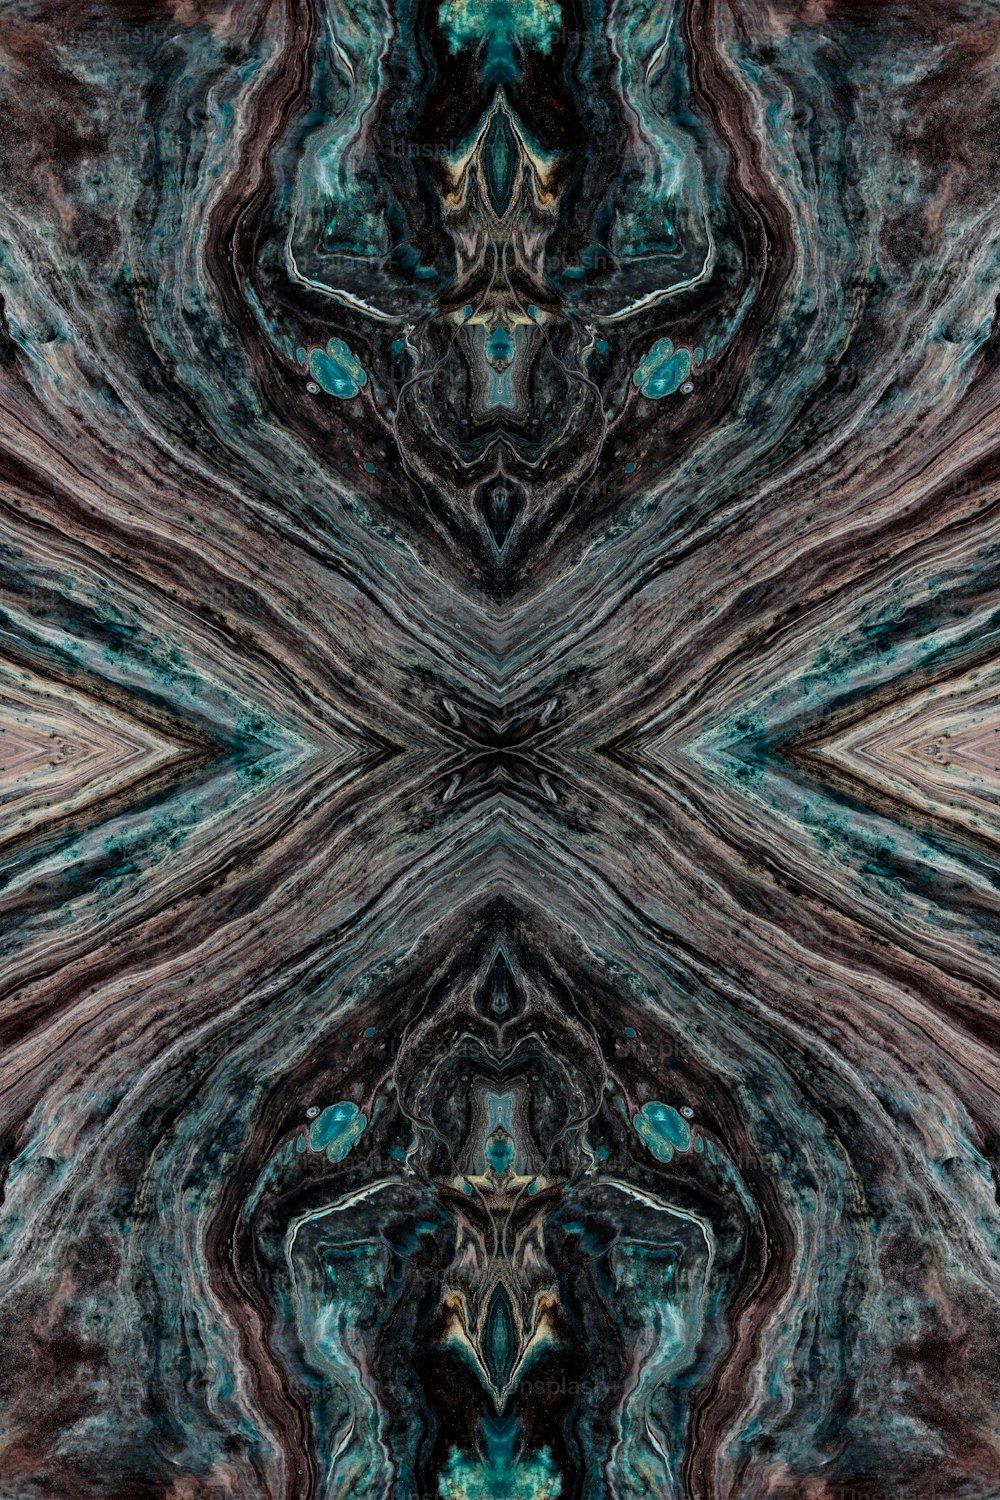 une image générée par ordinateur d’un dessin abstrait